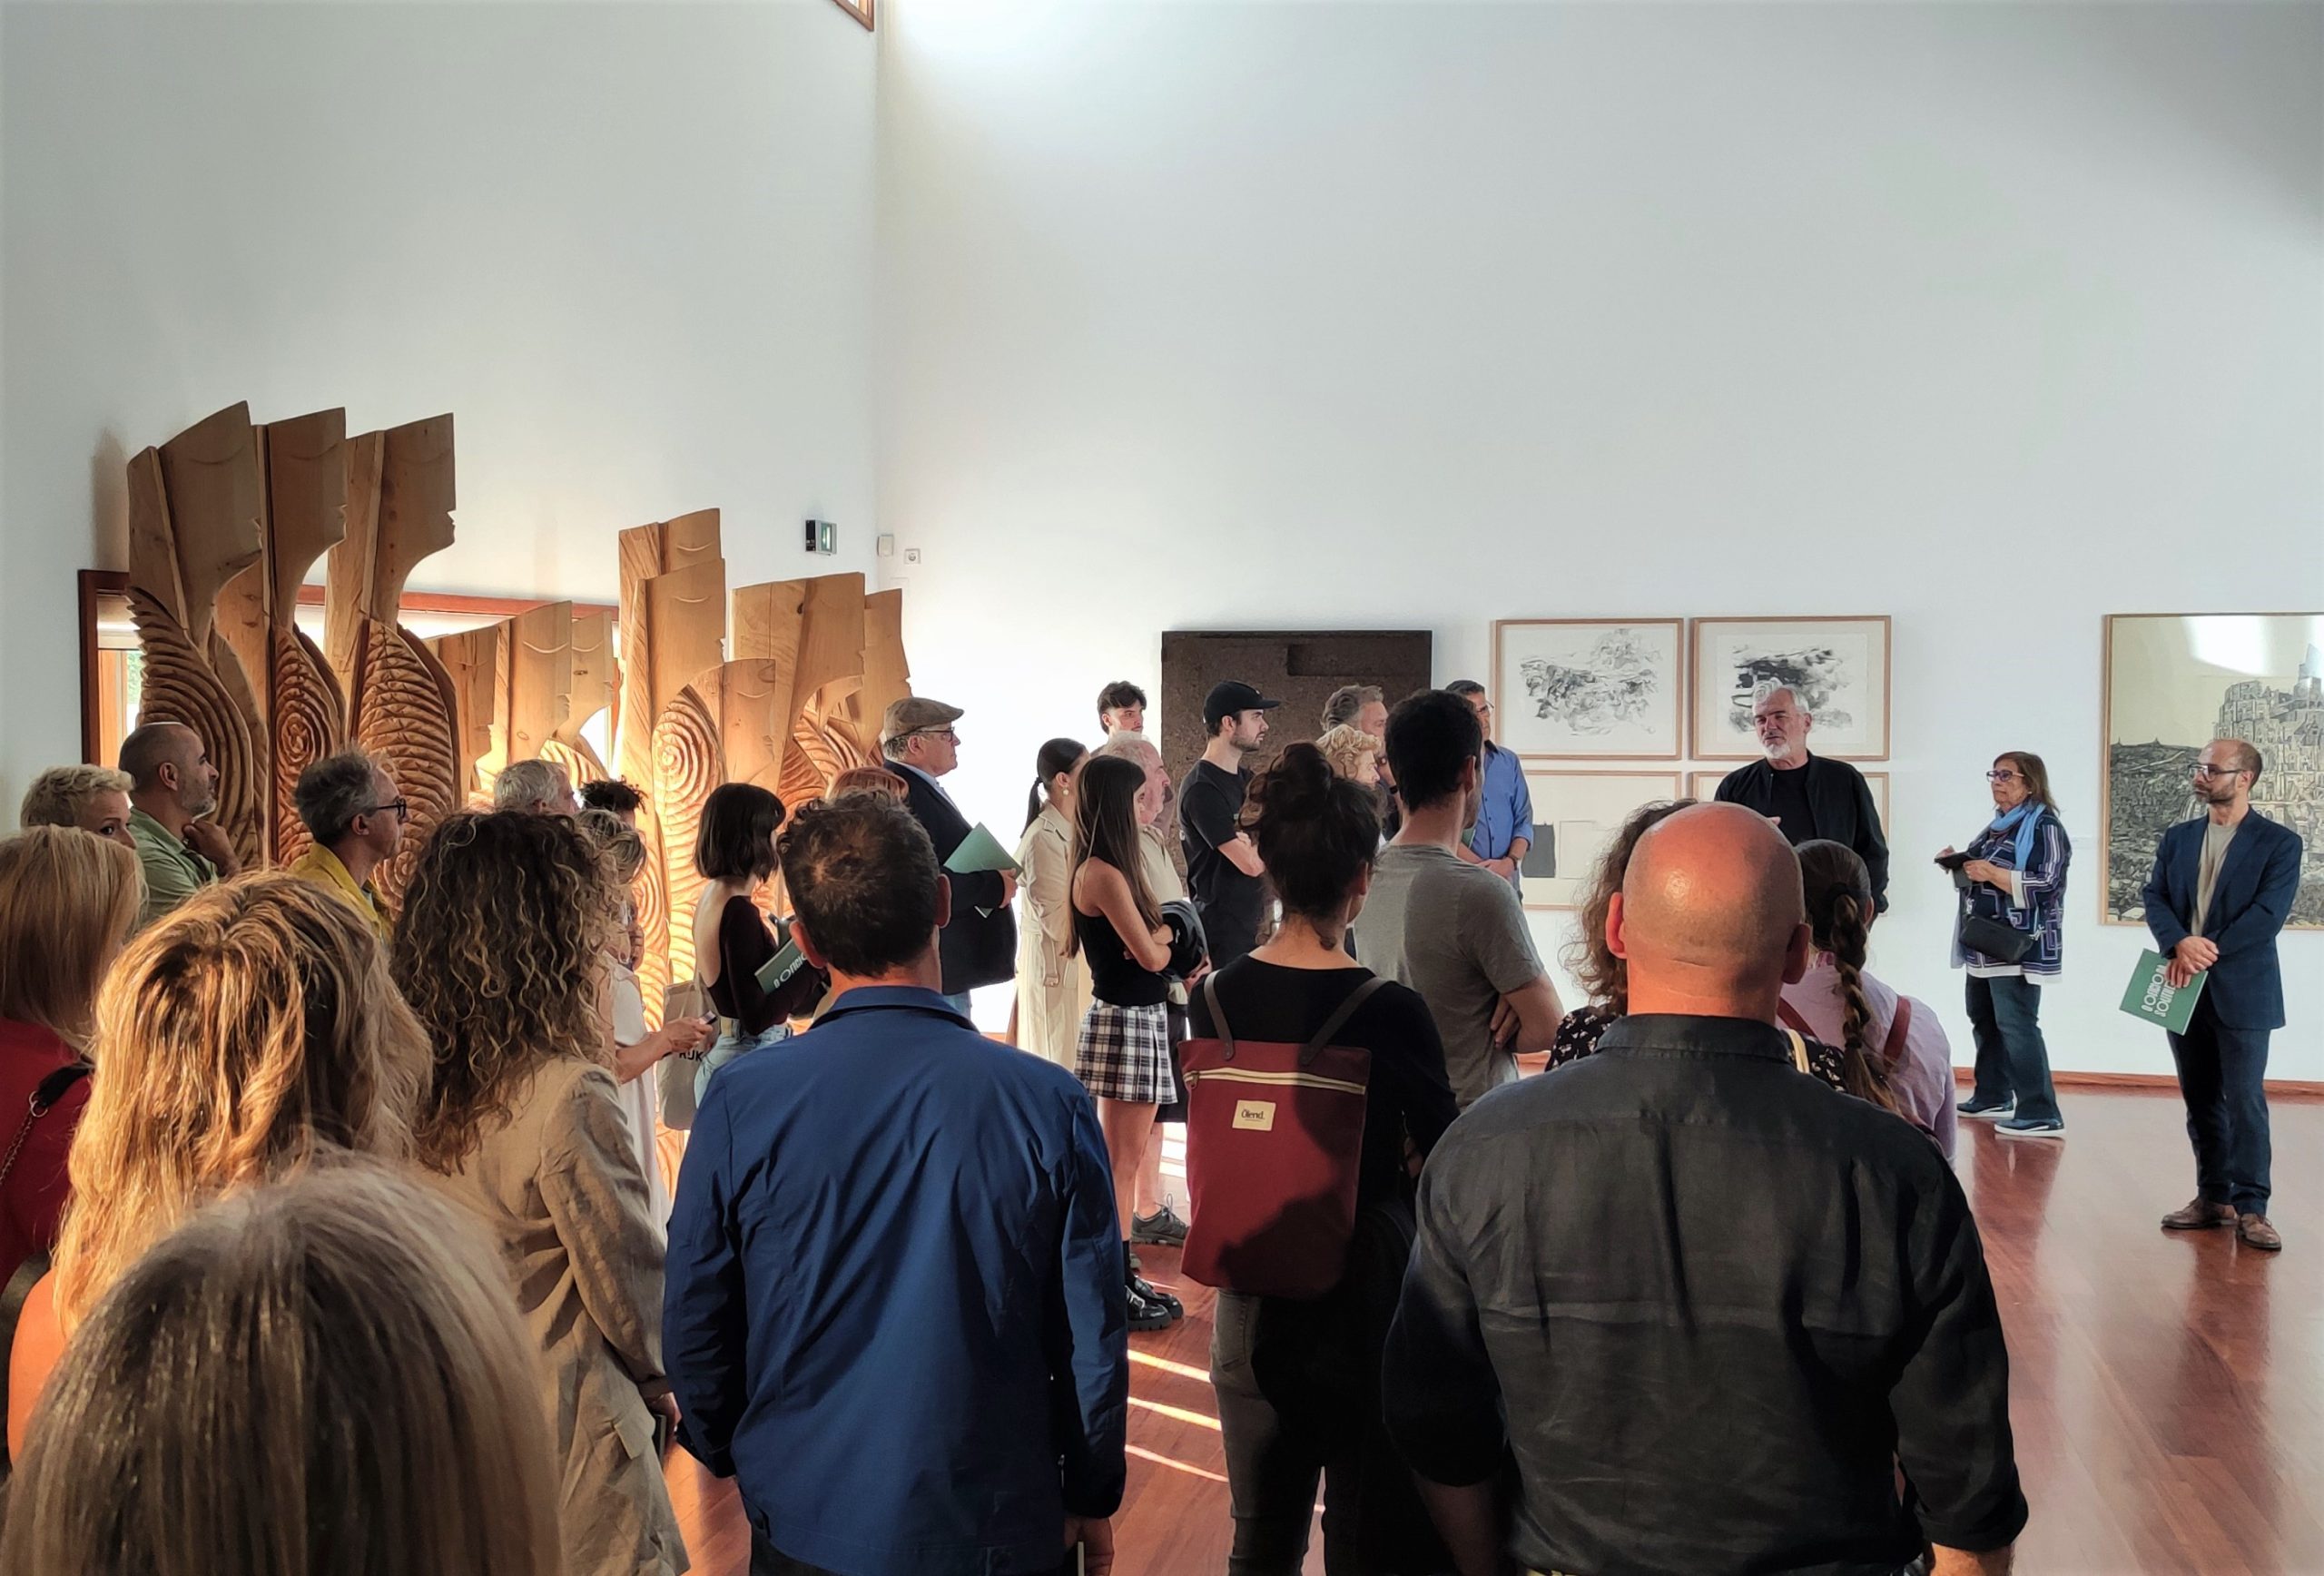 Santa Maria da Feira: Exposição “O Ofício da Solitude” apresenta obras de dez artistas plásticos portugueses